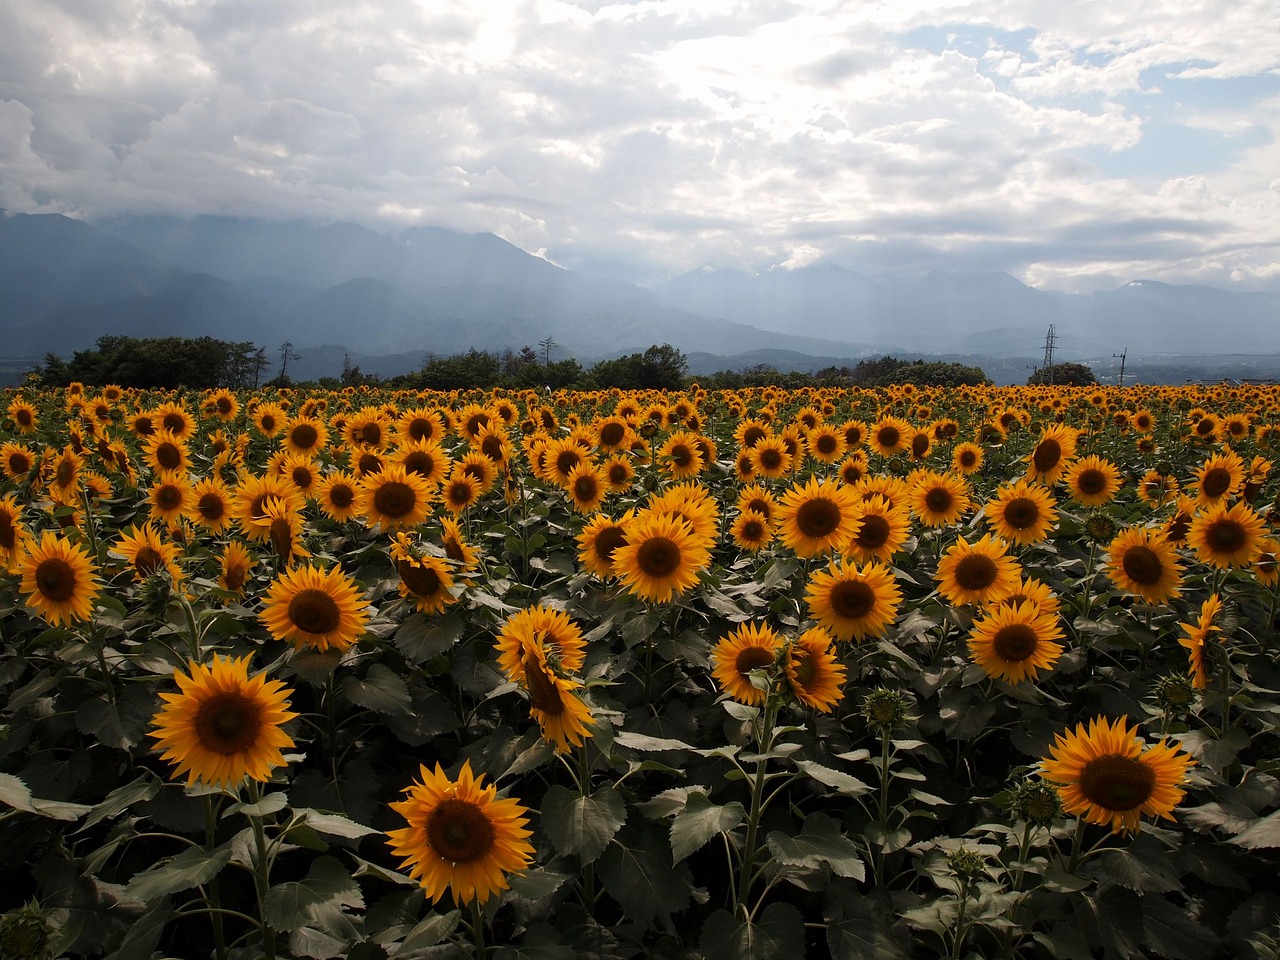 sunflower yellow sunflower field free photo